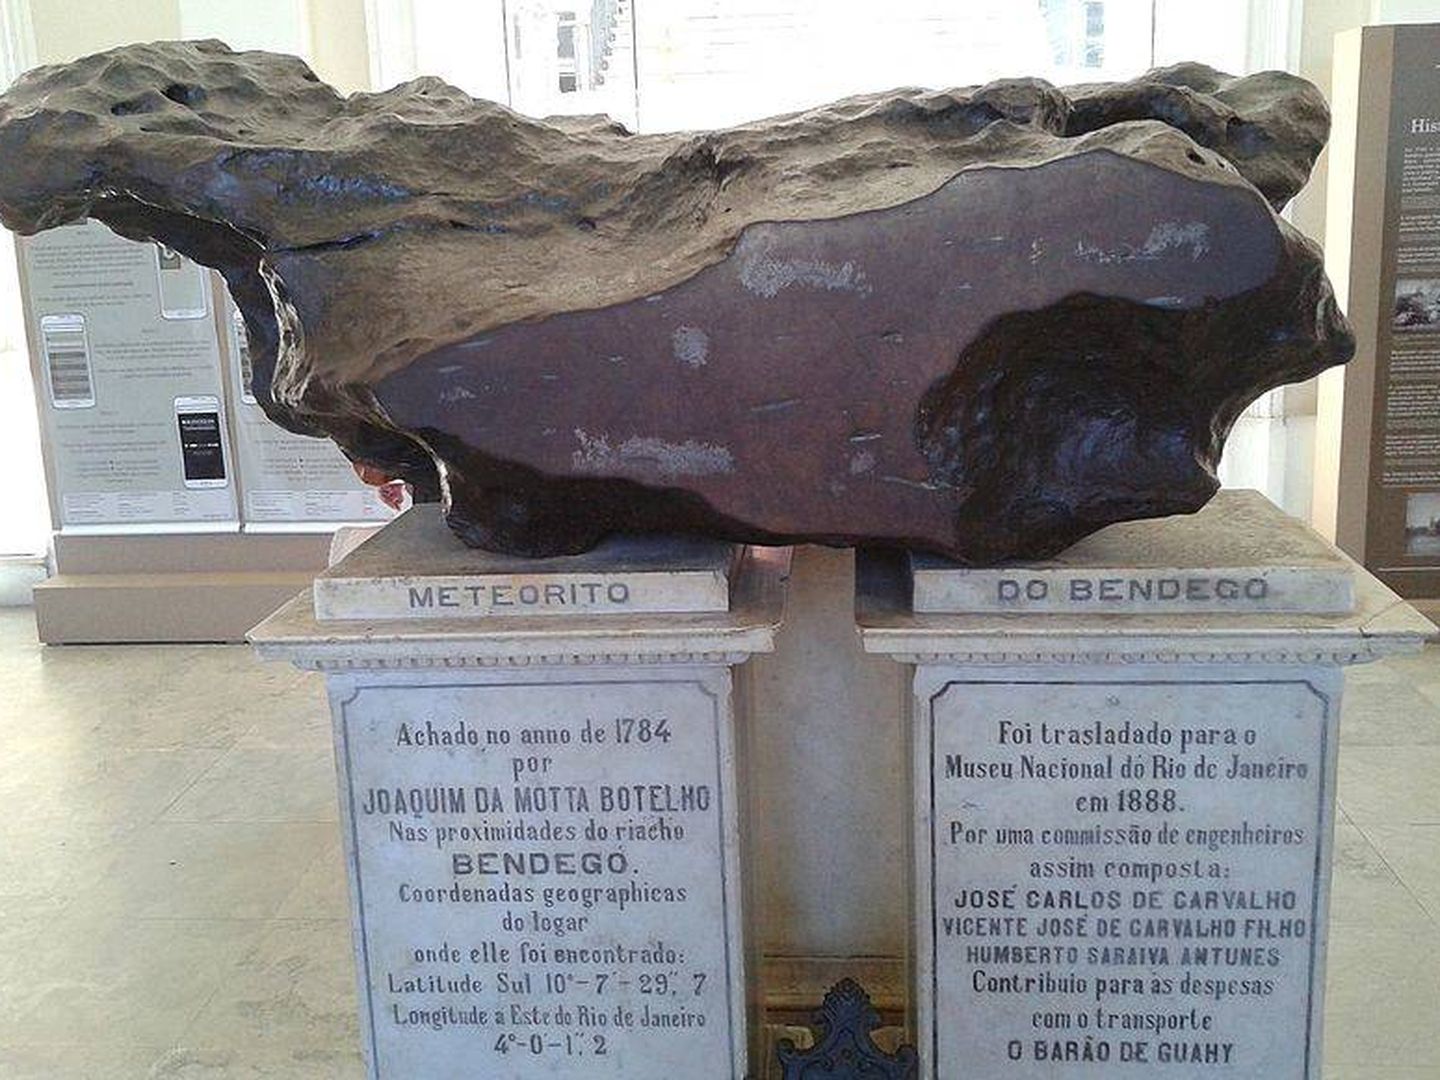 Meteorito de Bendegó.